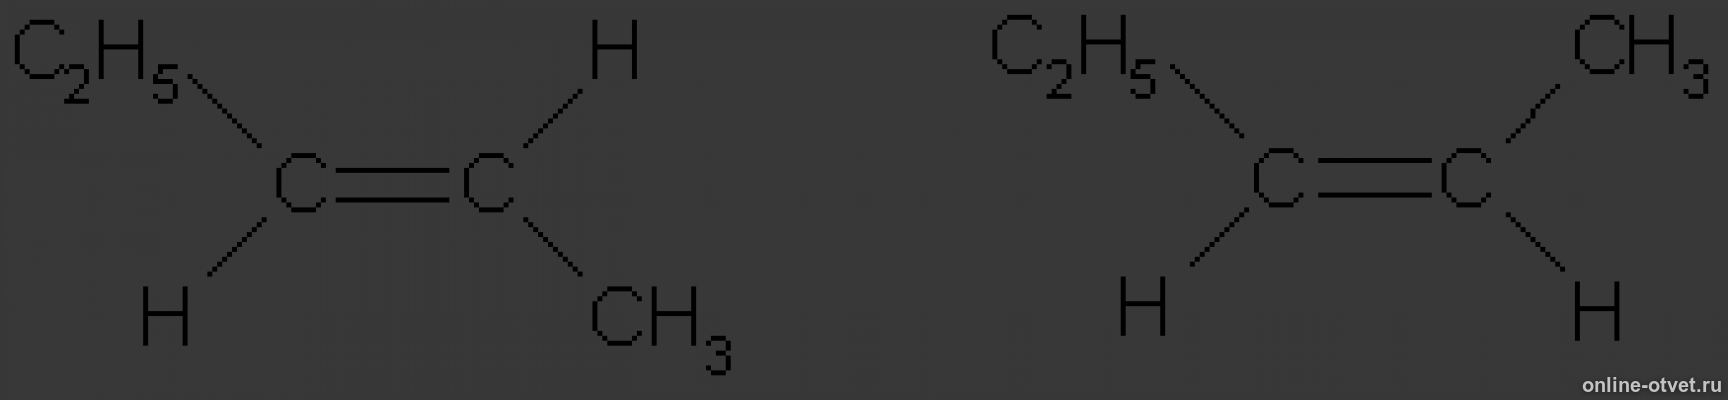 Цис пентен 2. Цис пентен 2 формула. Транс пентен 2 структурная формула. 3 3 Диметил бутен 1 цис и транс изомерия. 2 3 диметилбутен изомерия